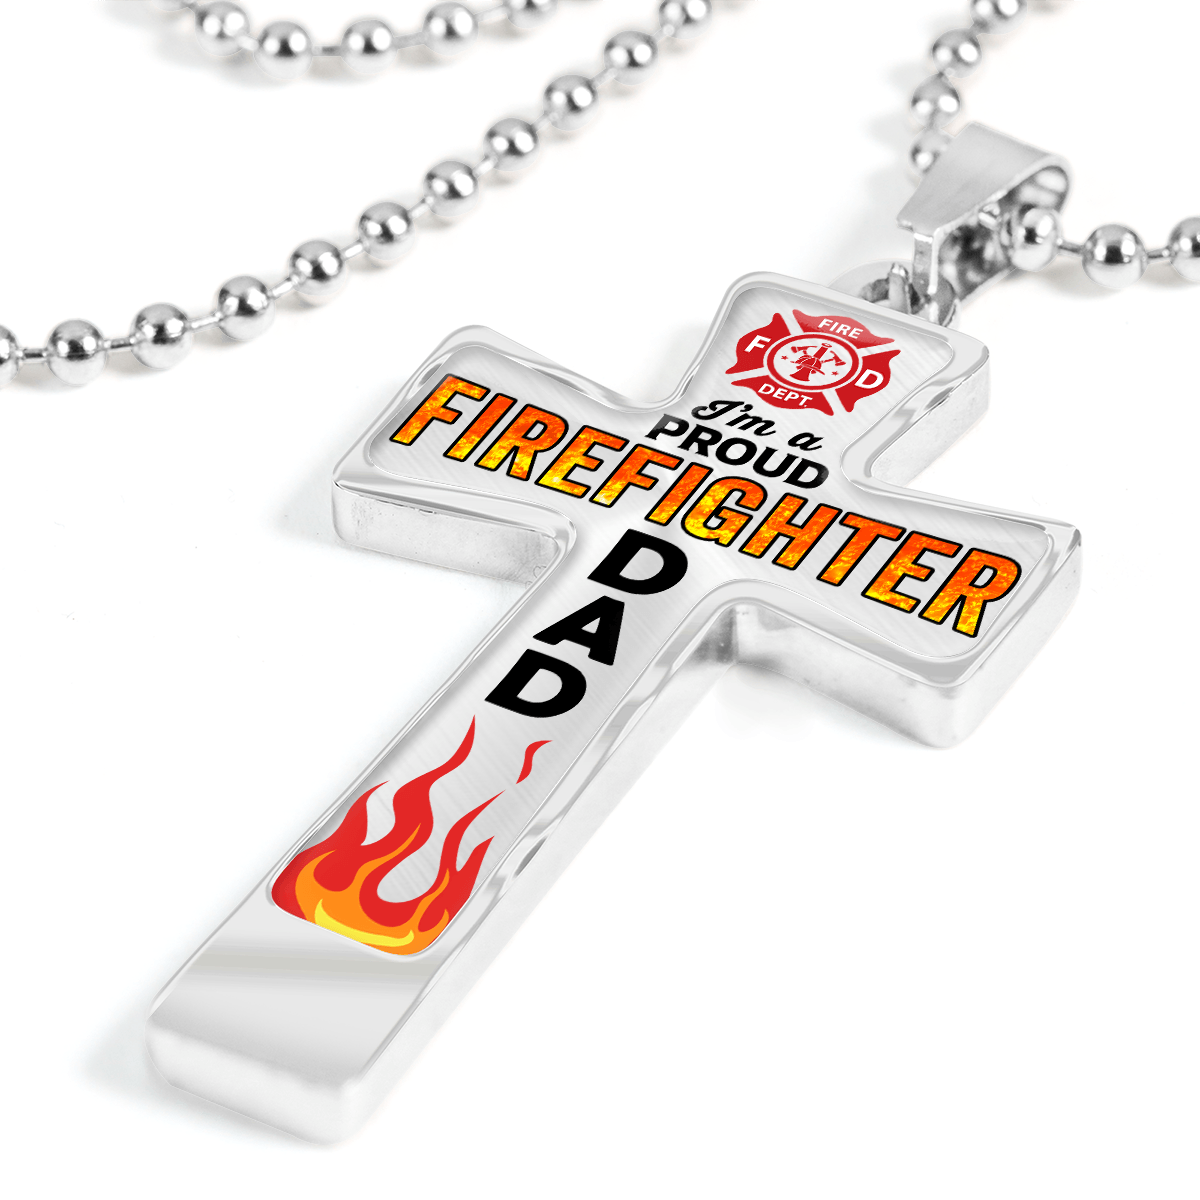 Proud Firefighter Dad Cross Necklace - Heroic Defender